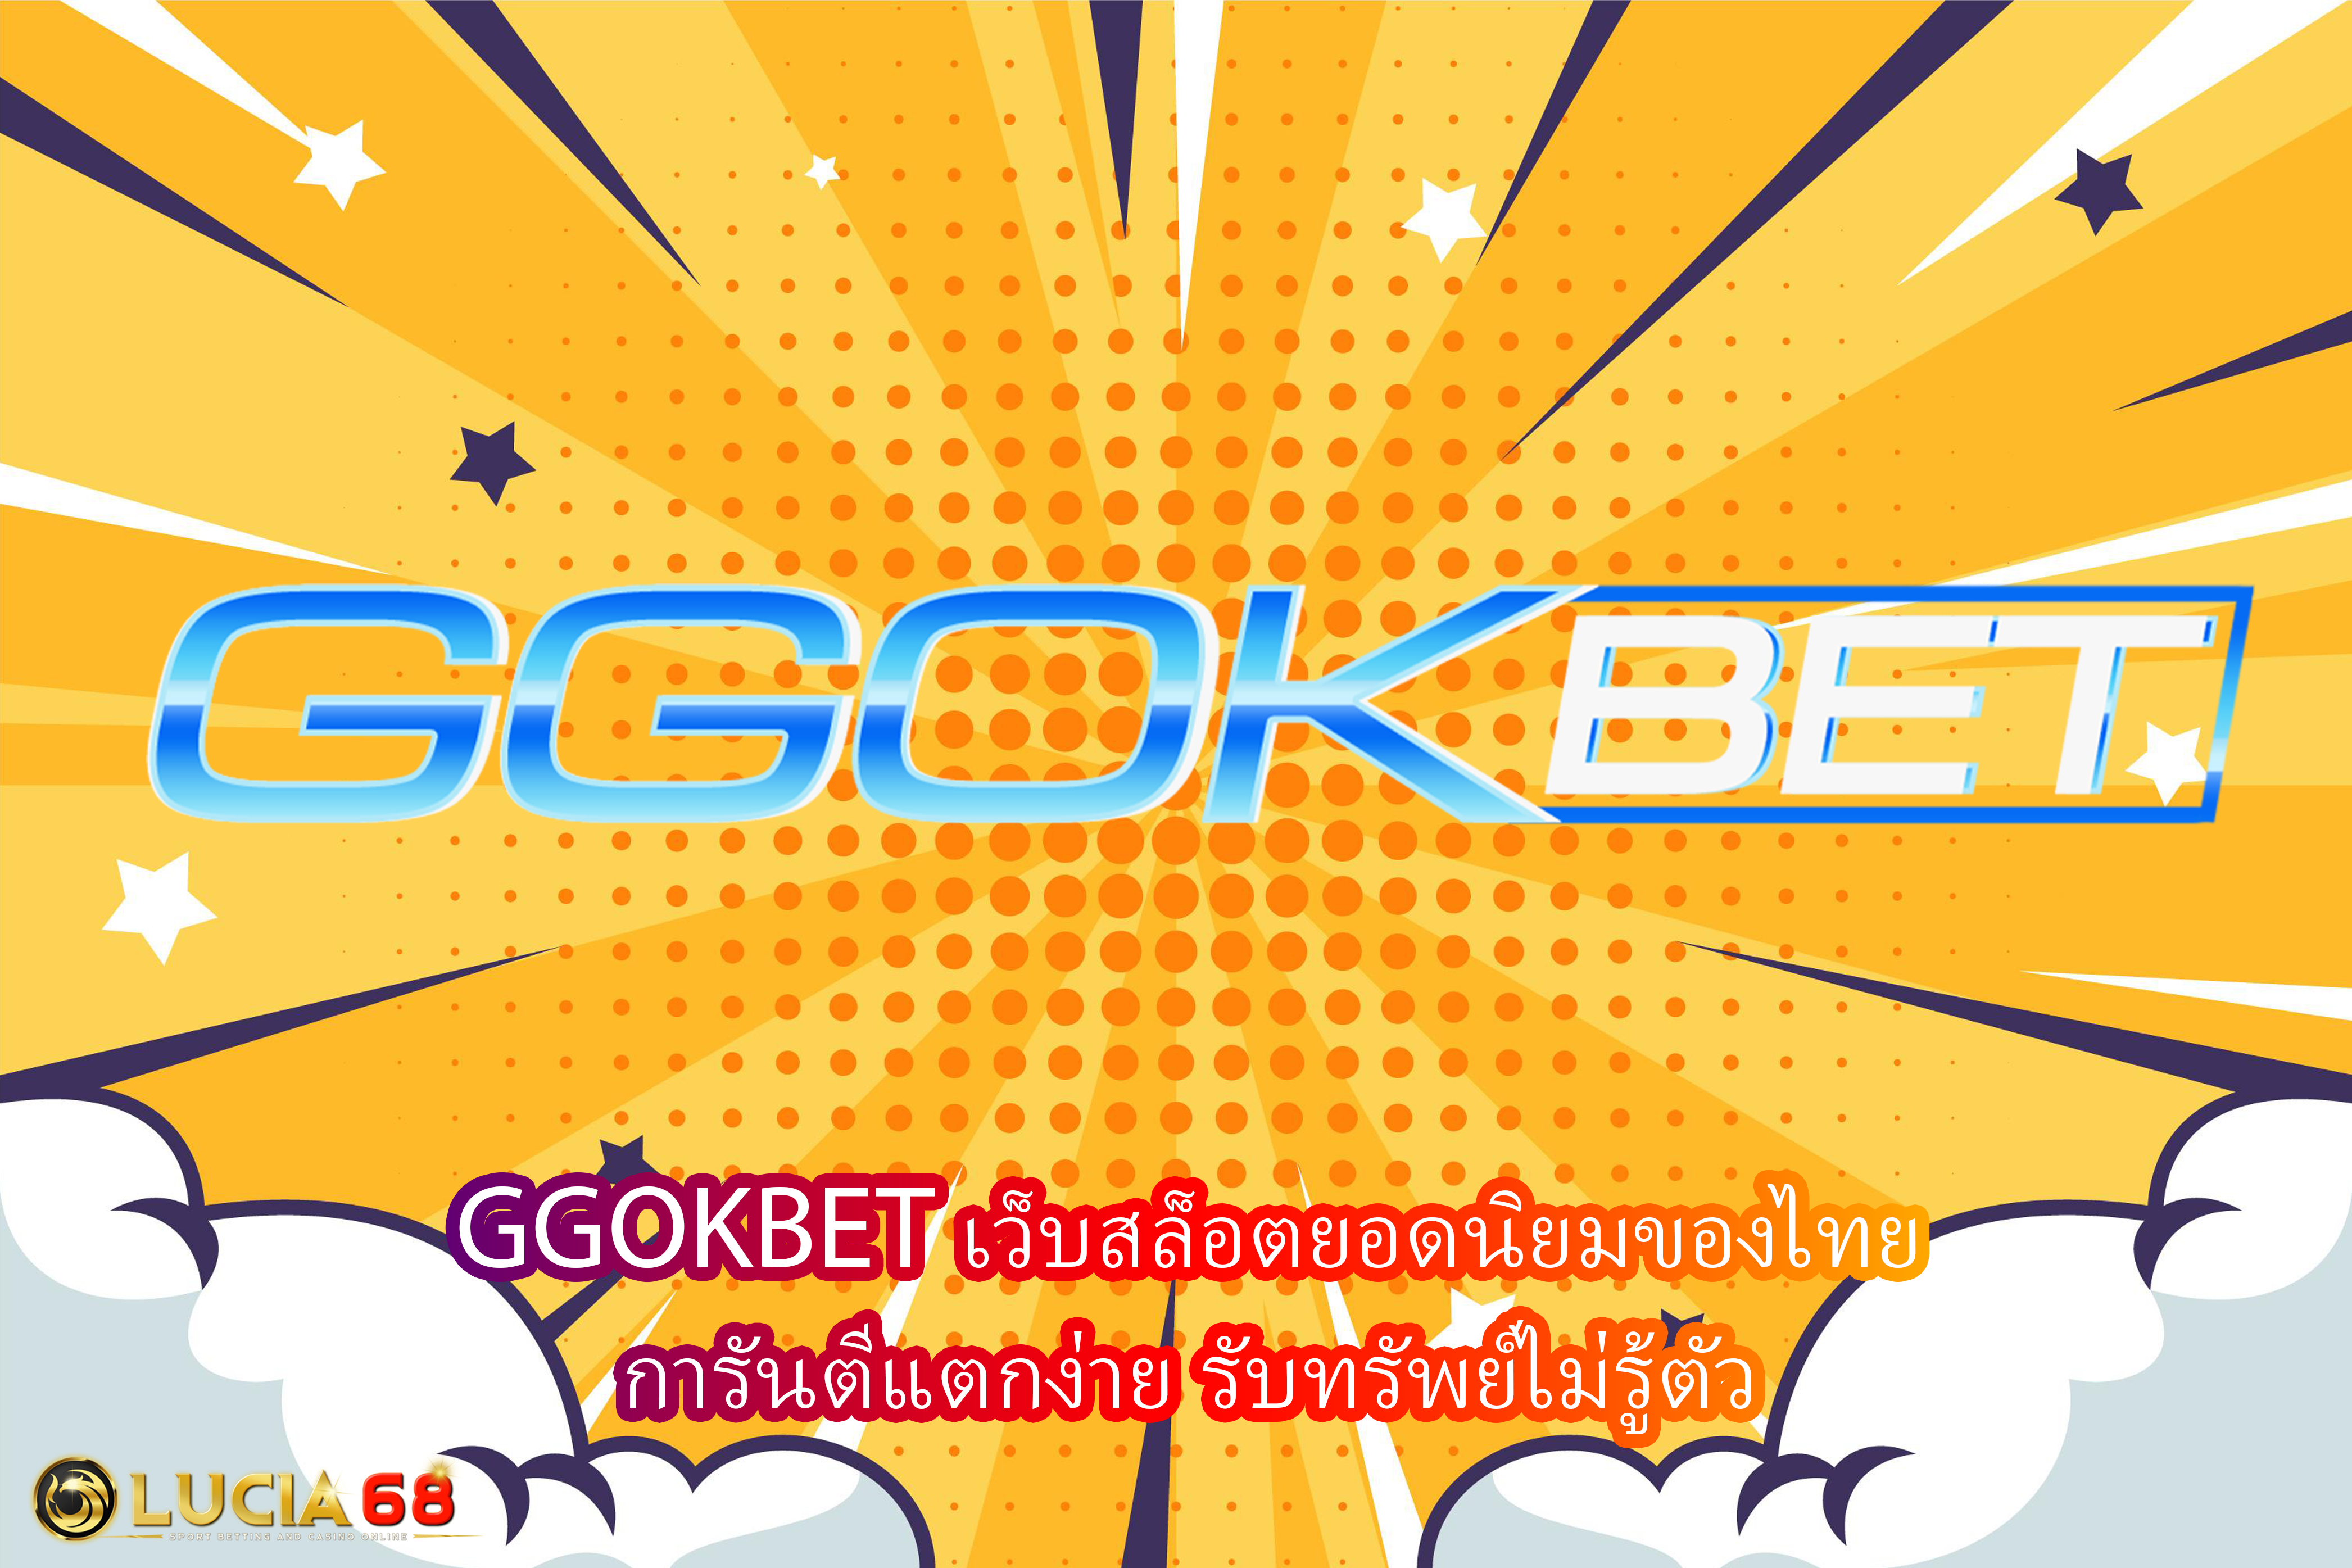 GGOKBET เว็บสล็อตยอดนิยมของไทย การันตีแตกง่าย รับทรัพย์ไม่รู้ตัว